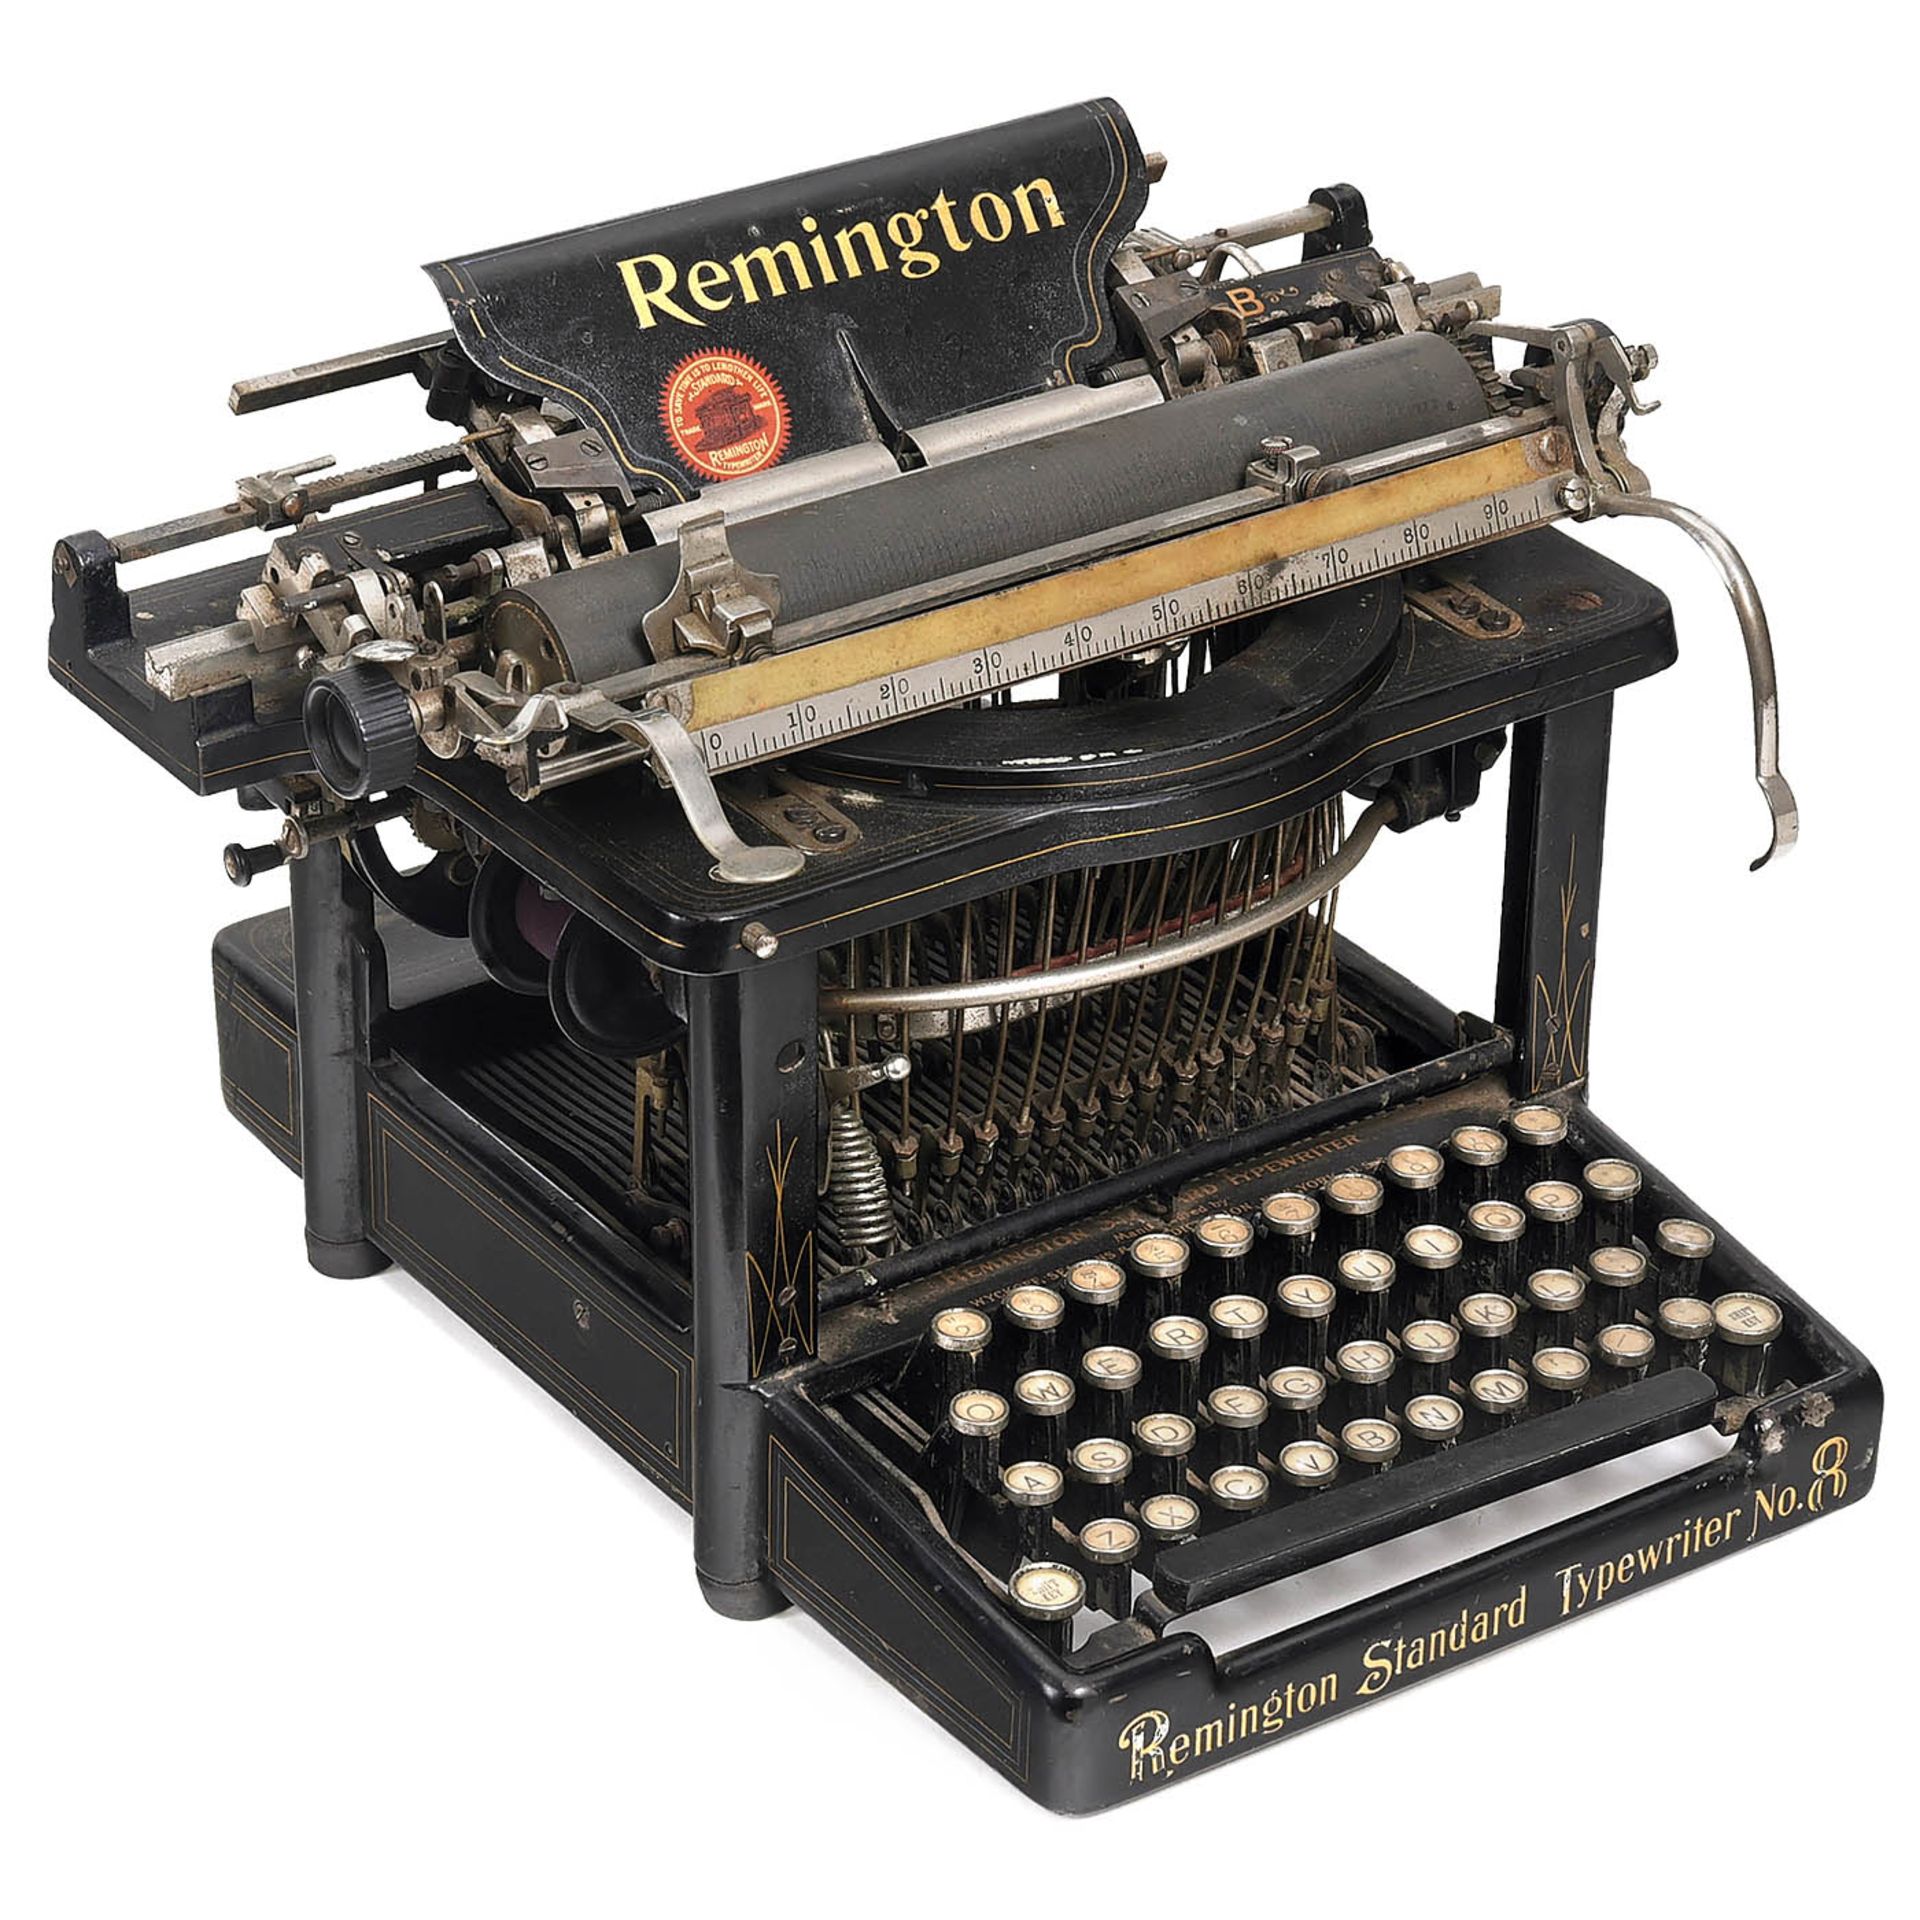 3 Remington Typewriters - Bild 2 aus 4